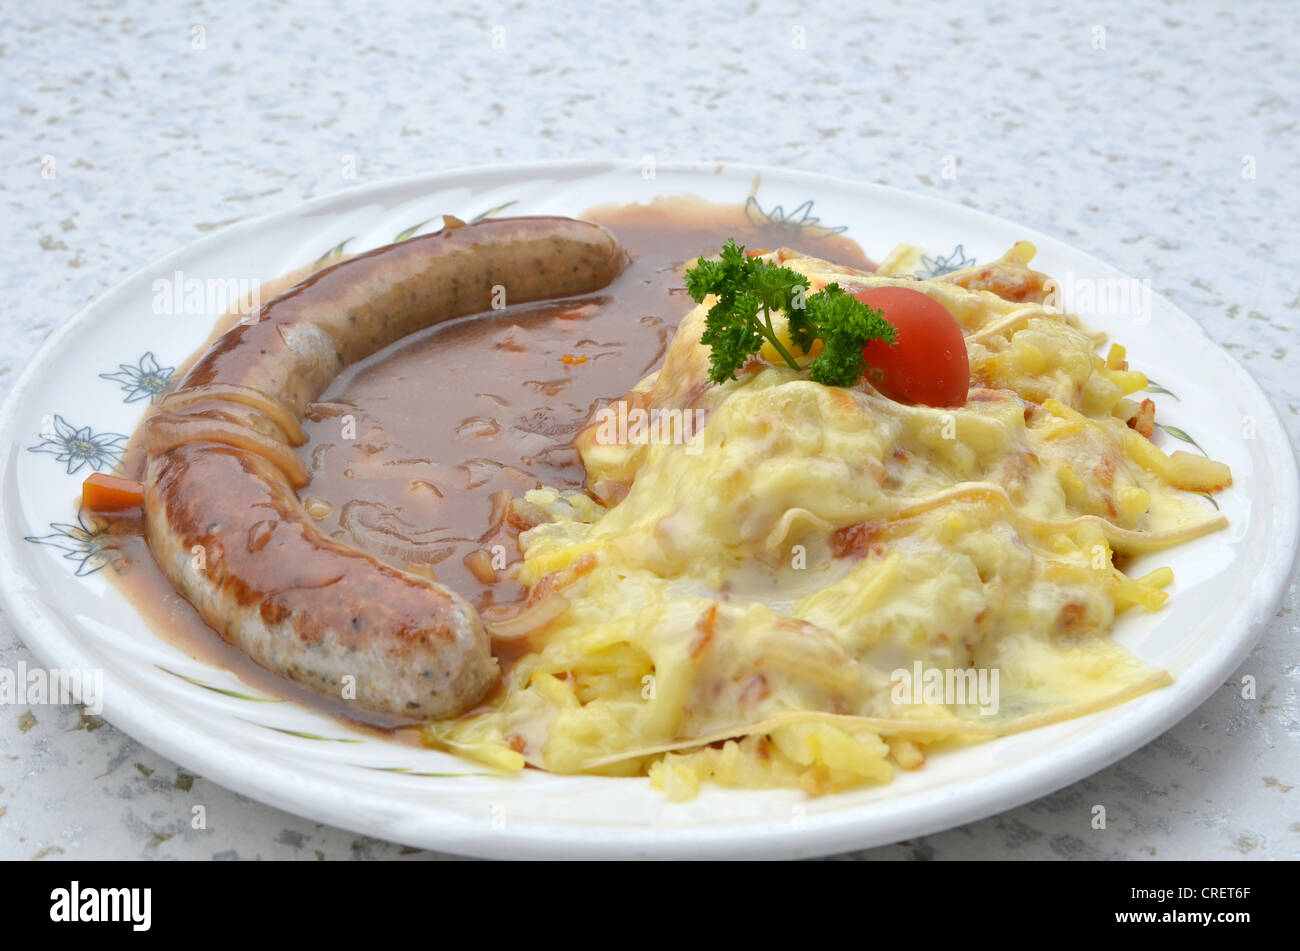 La cena tradicional alemana de Bratwurst servida con una salsa de cebolla y queso encabezó la patata rosti - Enfoque selectivo Foto de stock